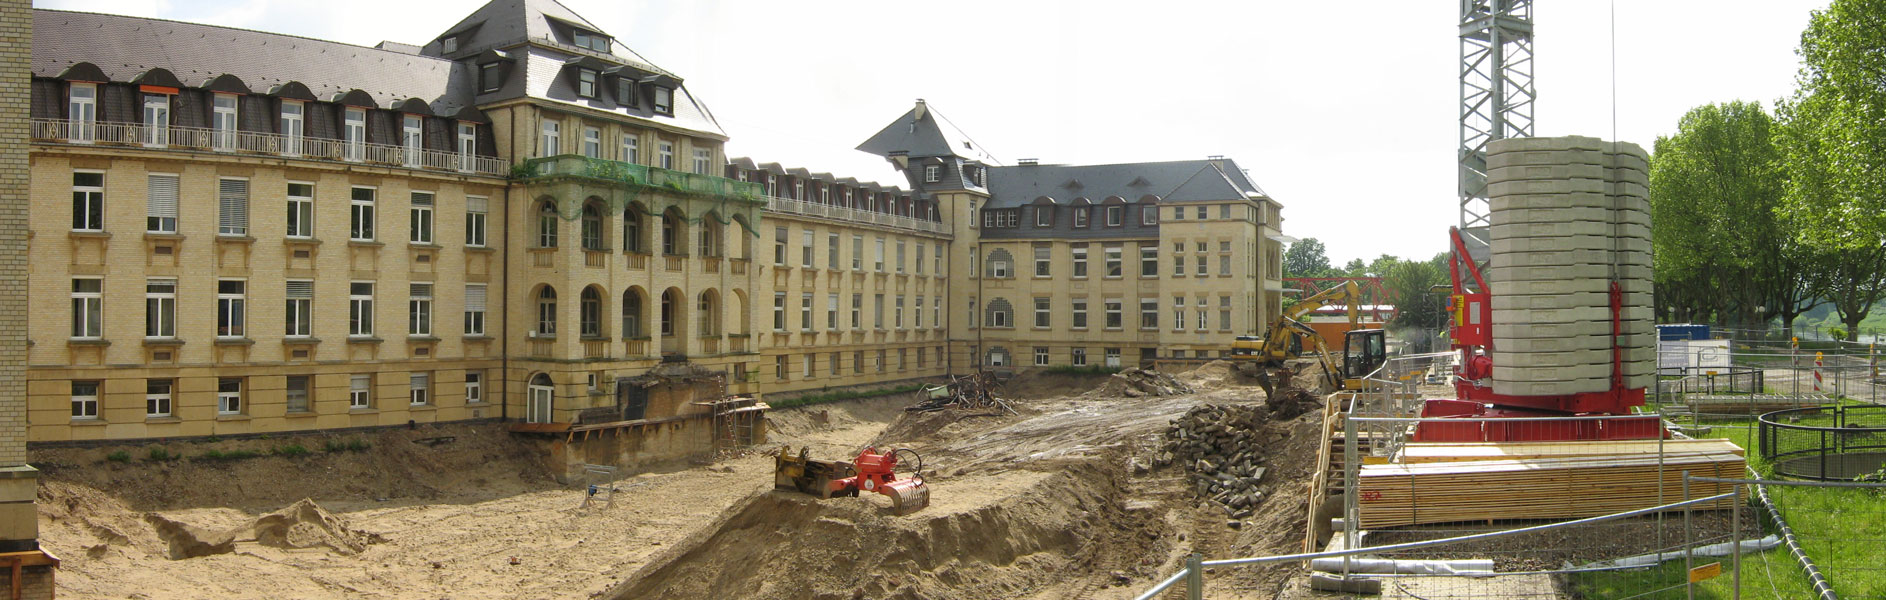 Tiefgarage Klinikum Mannheim Streib Bau